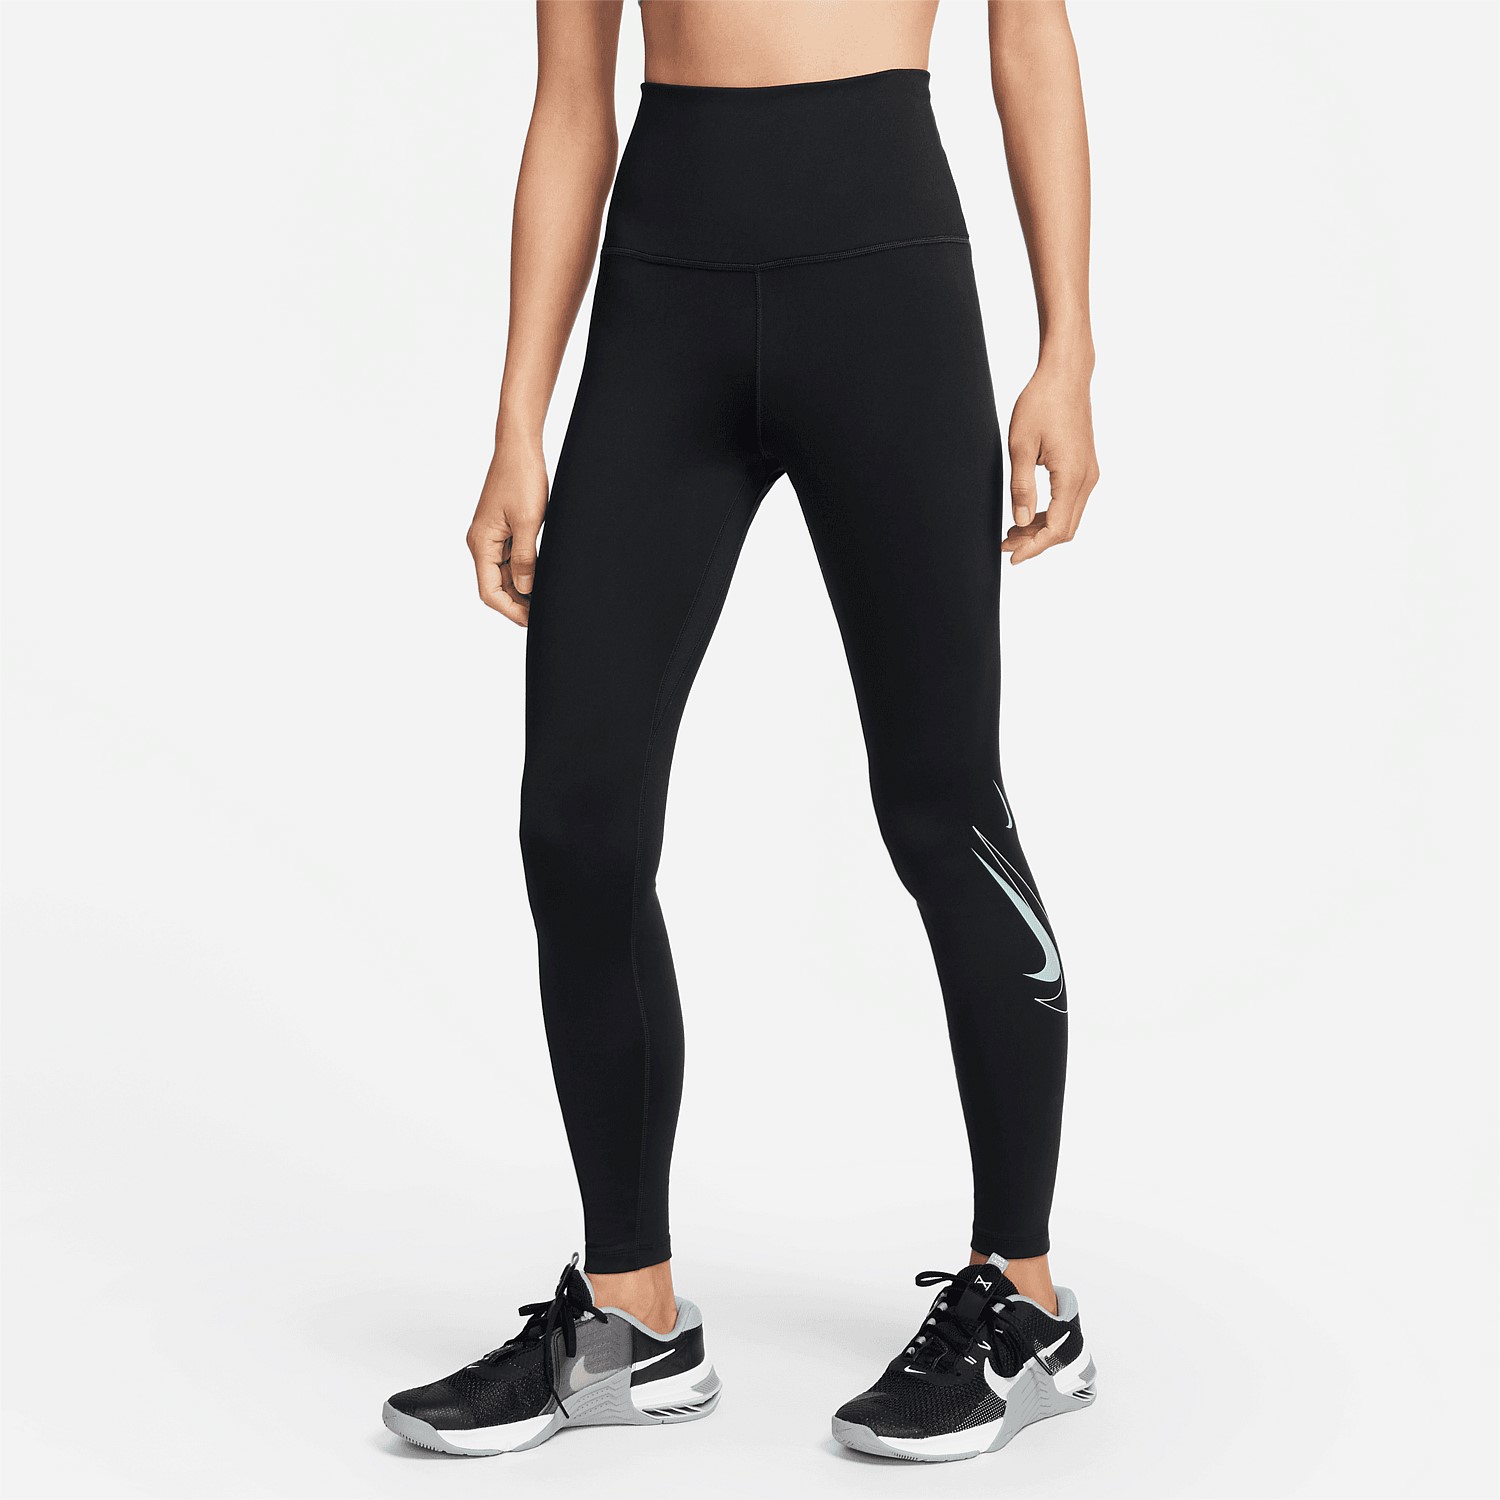 Nike Women's High-Waisted Leggings, Tights & Leggings